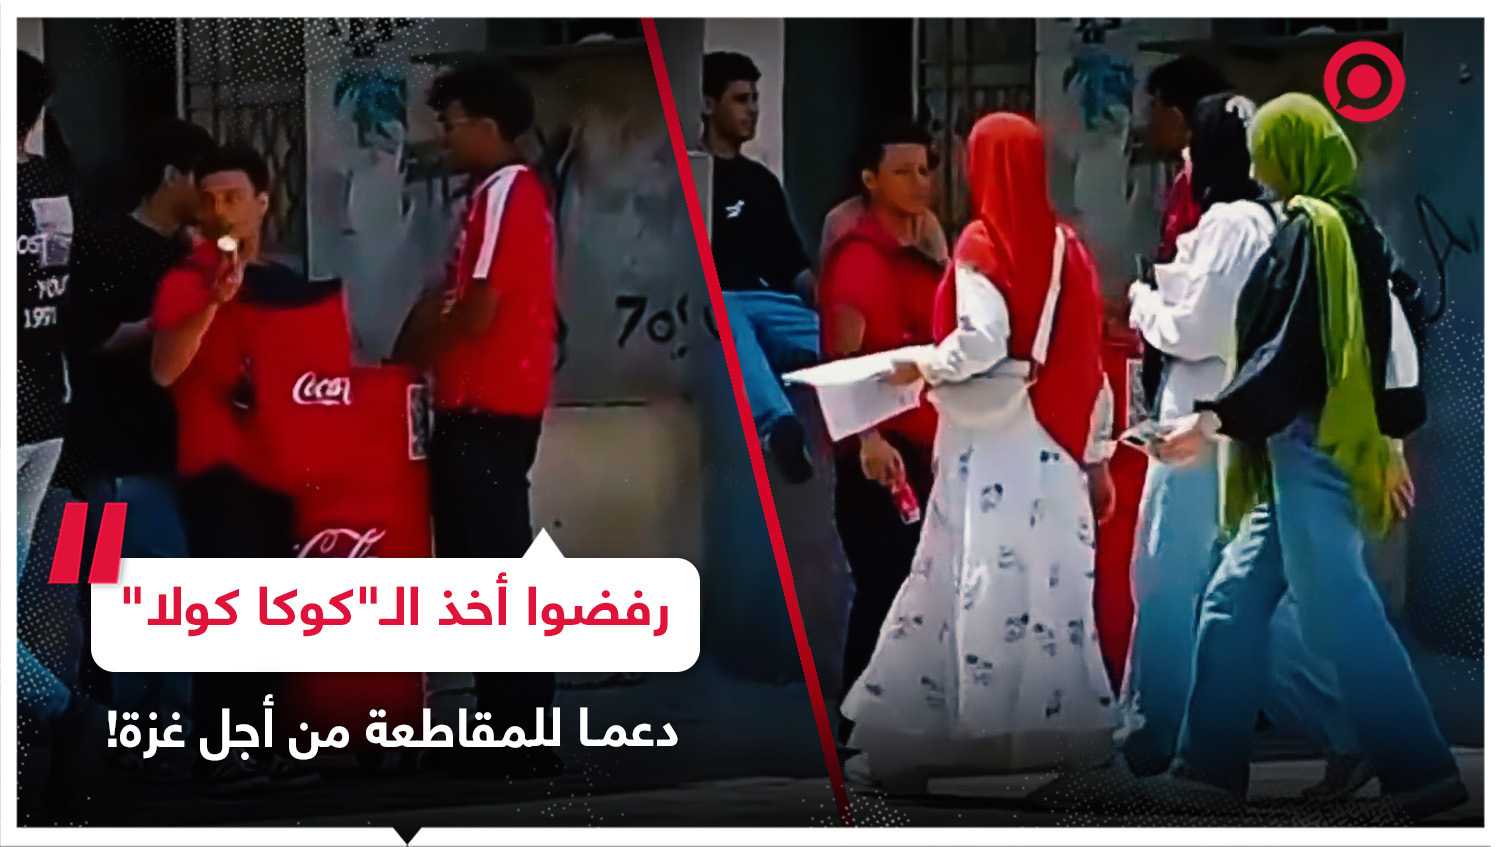 دعما للمقاطعة من أجل غزة.. مصريون يرفضون أخذ عبوات "كوكا كولا" توزع مجانا